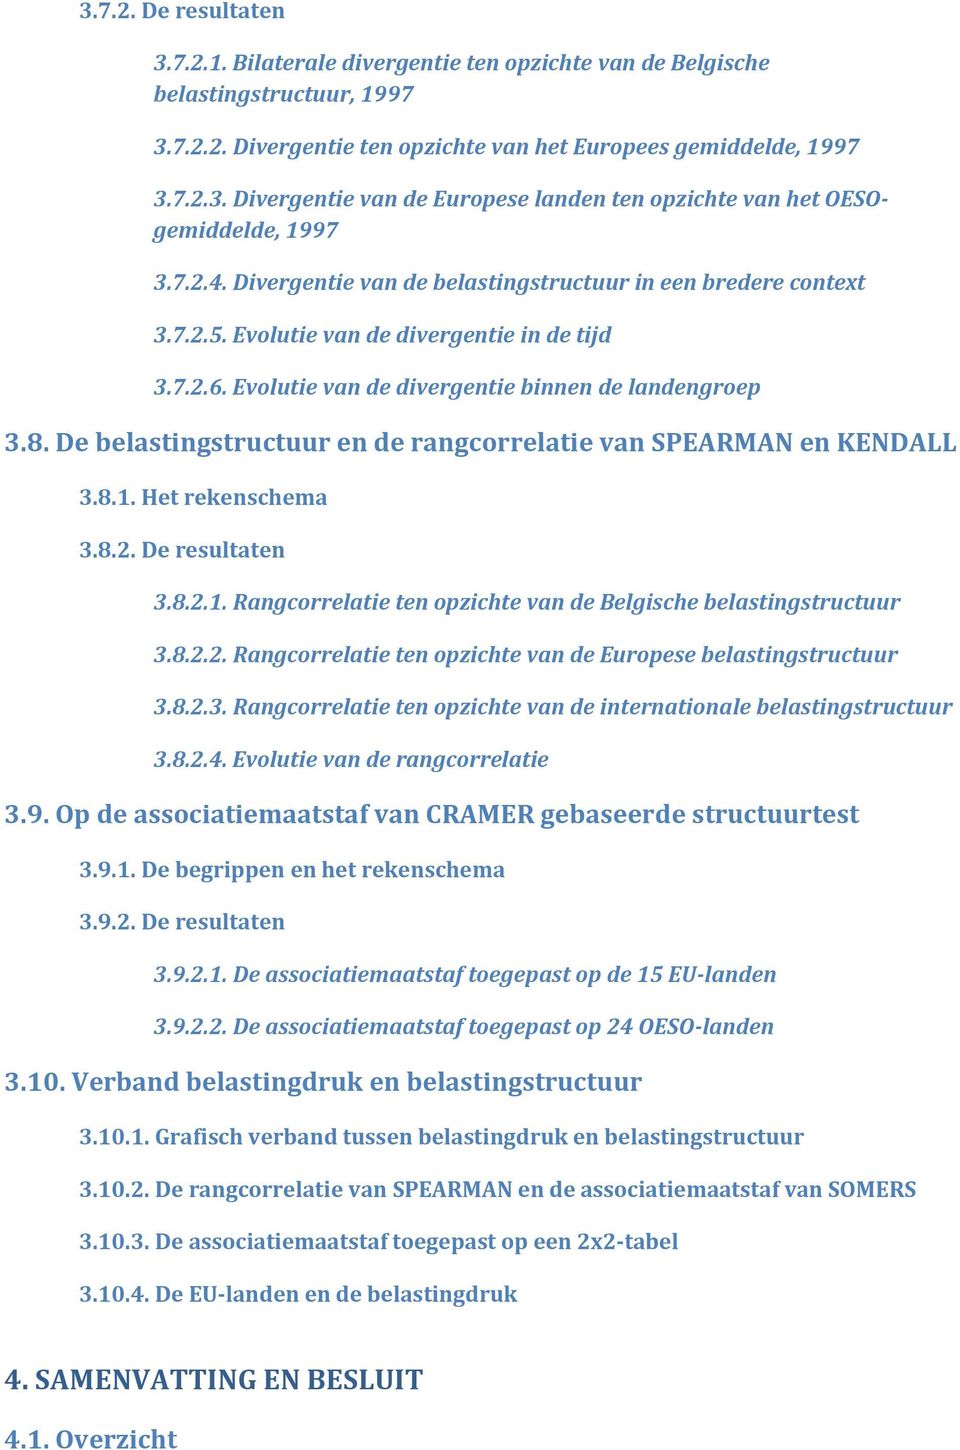 De belastingstructuur en de rangcorrelatie van SPEARMAN en KENDALL 3.8.1. Het rekenschema 3.8.2. De resultaten 3.8.2.1. Rangcorrelatie ten opzichte van de Belgische belastingstructuur 3.8.2.2. Rangcorrelatie ten opzichte van de Europese belastingstructuur 3.